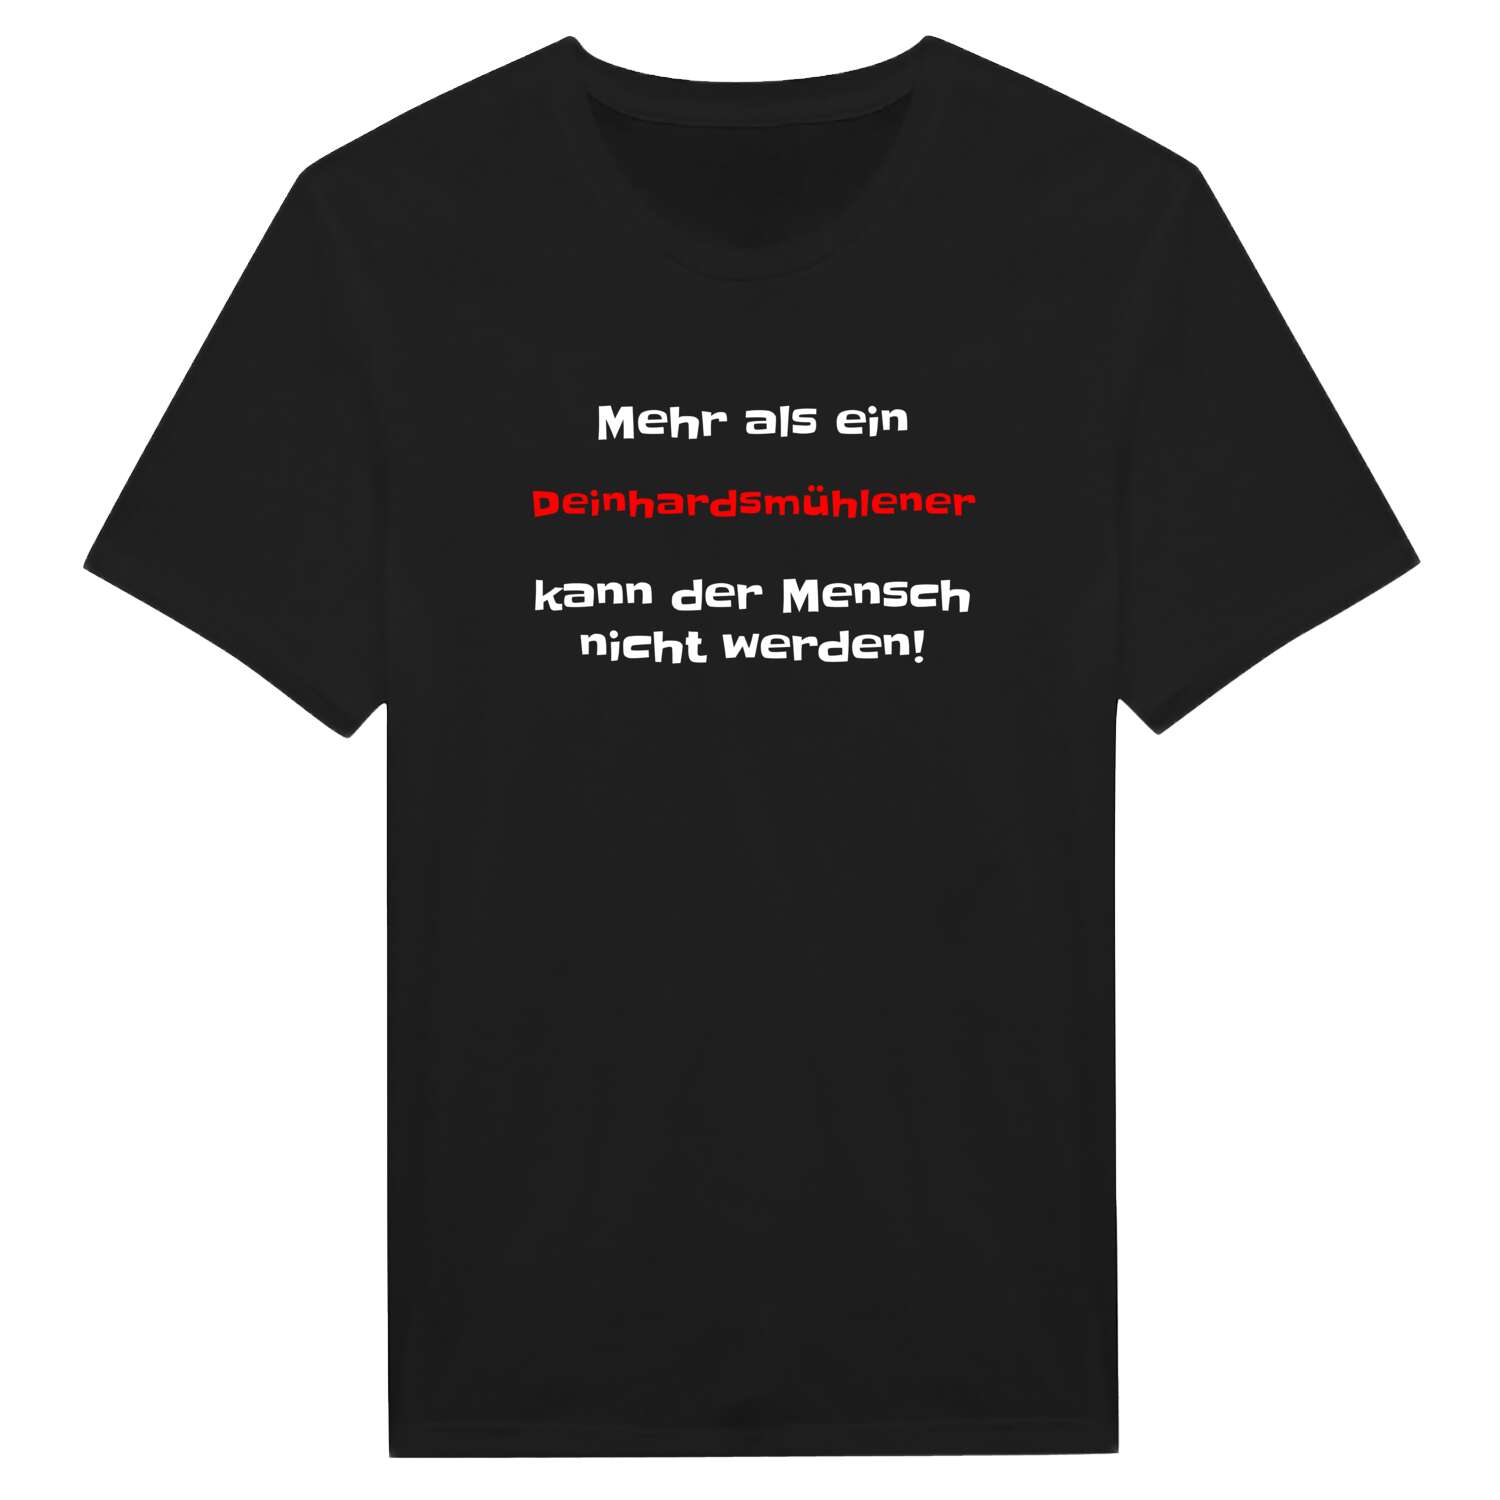 Deinhardsmühle T-Shirt »Mehr als ein«